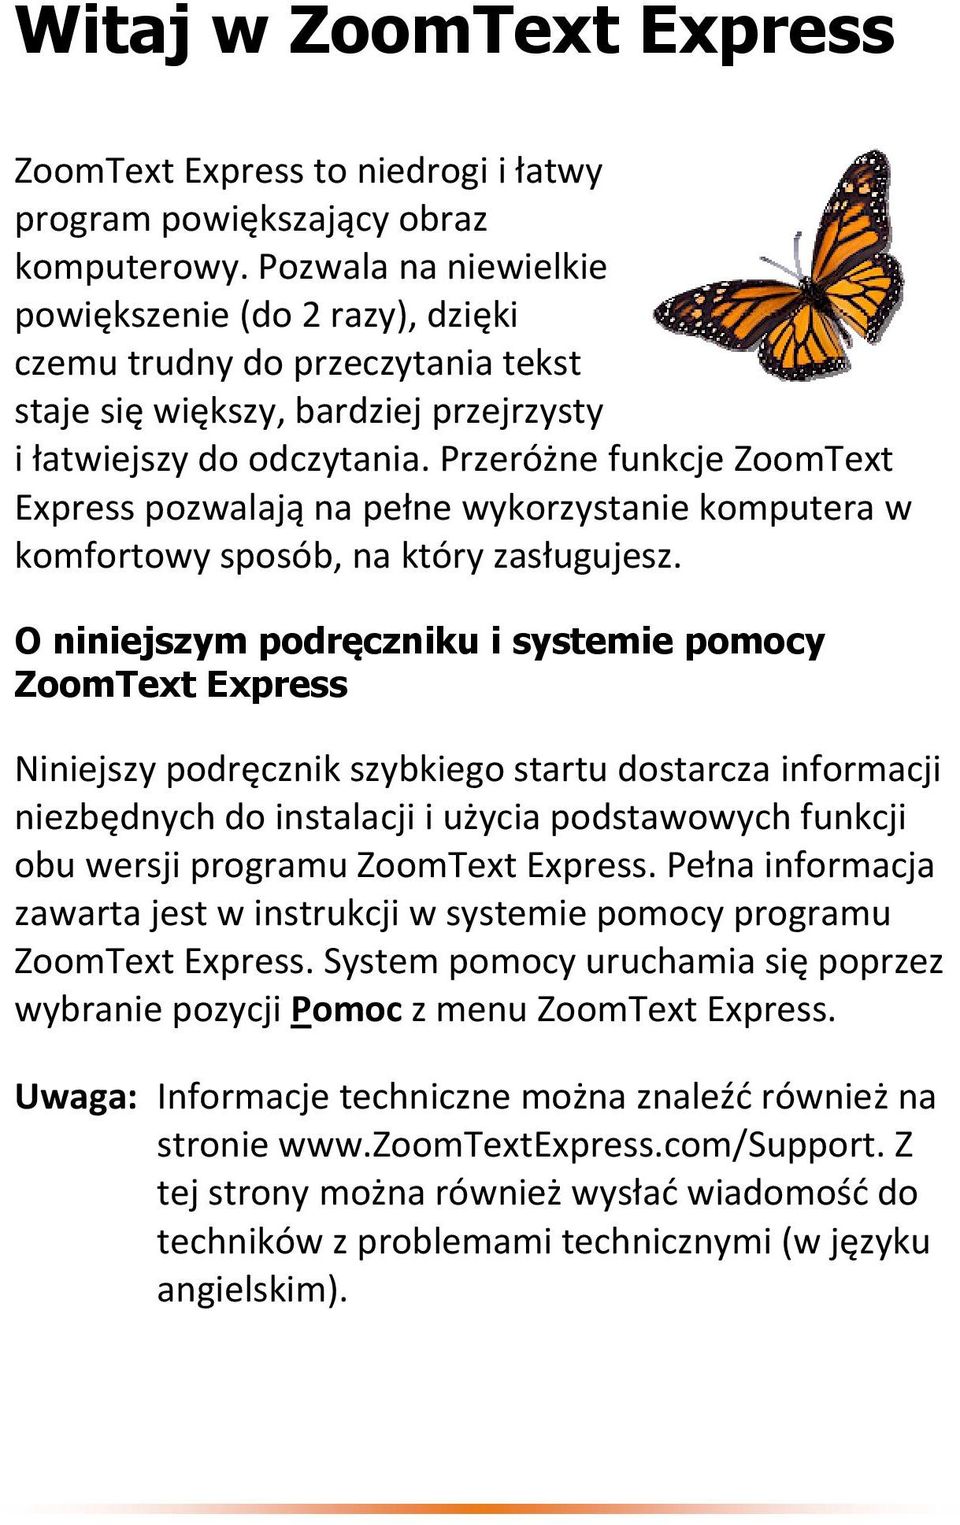 Przeróżne funkcje ZoomText Express pozwalają na pełne wykorzystanie komputera w komfortowy sposób, na który zasługujesz.